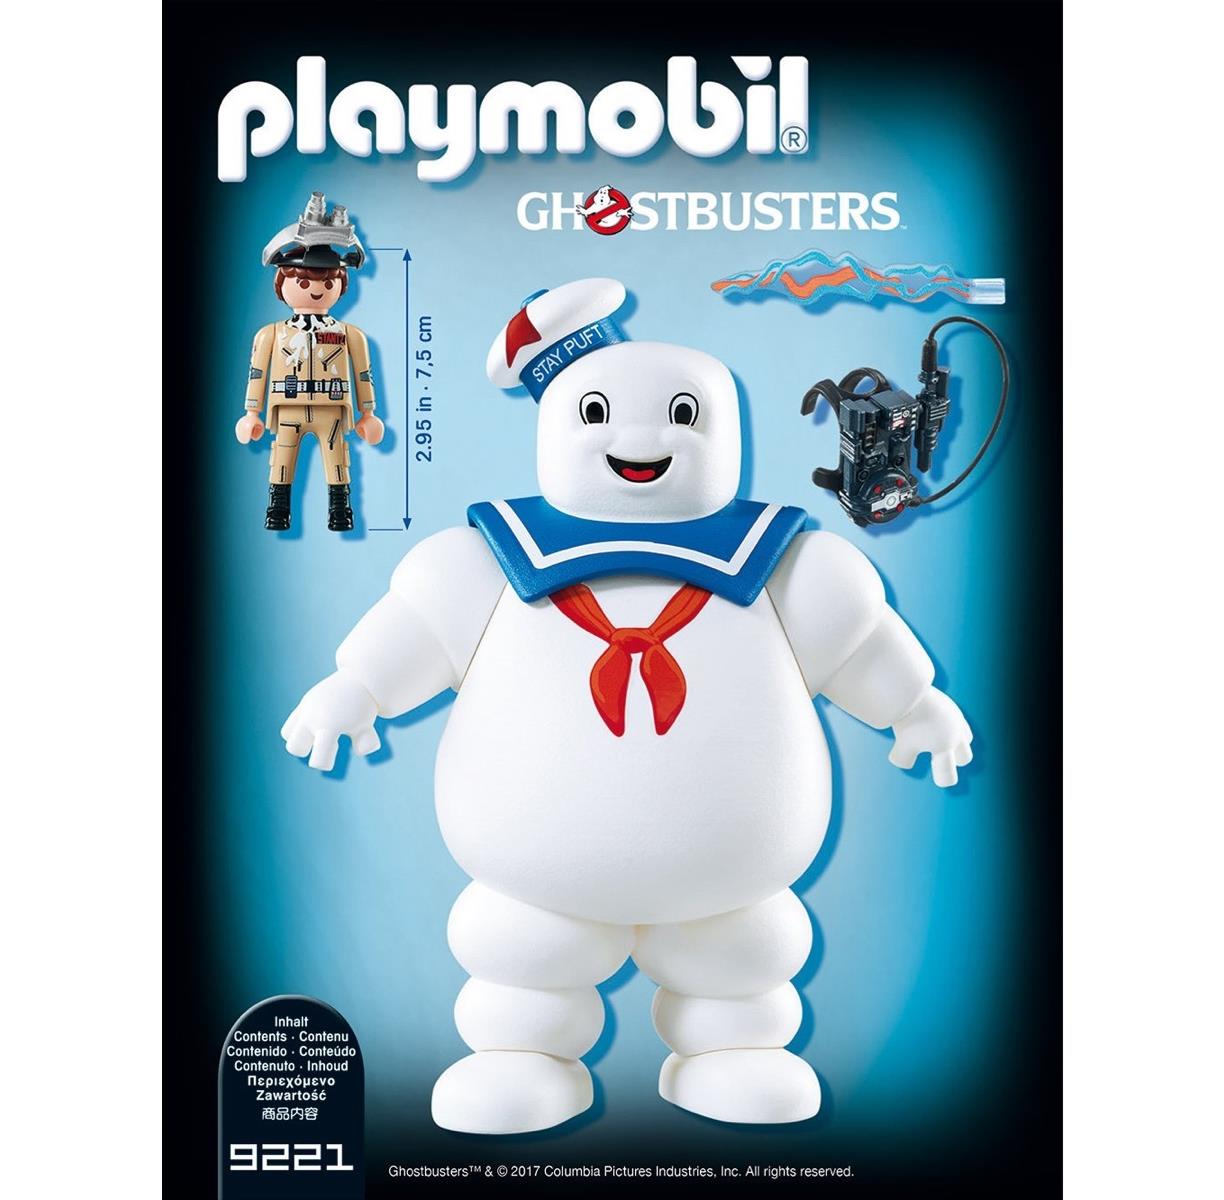 プレイモービル ブロック 組み立て Playmobil 9219 - Ghostbusters